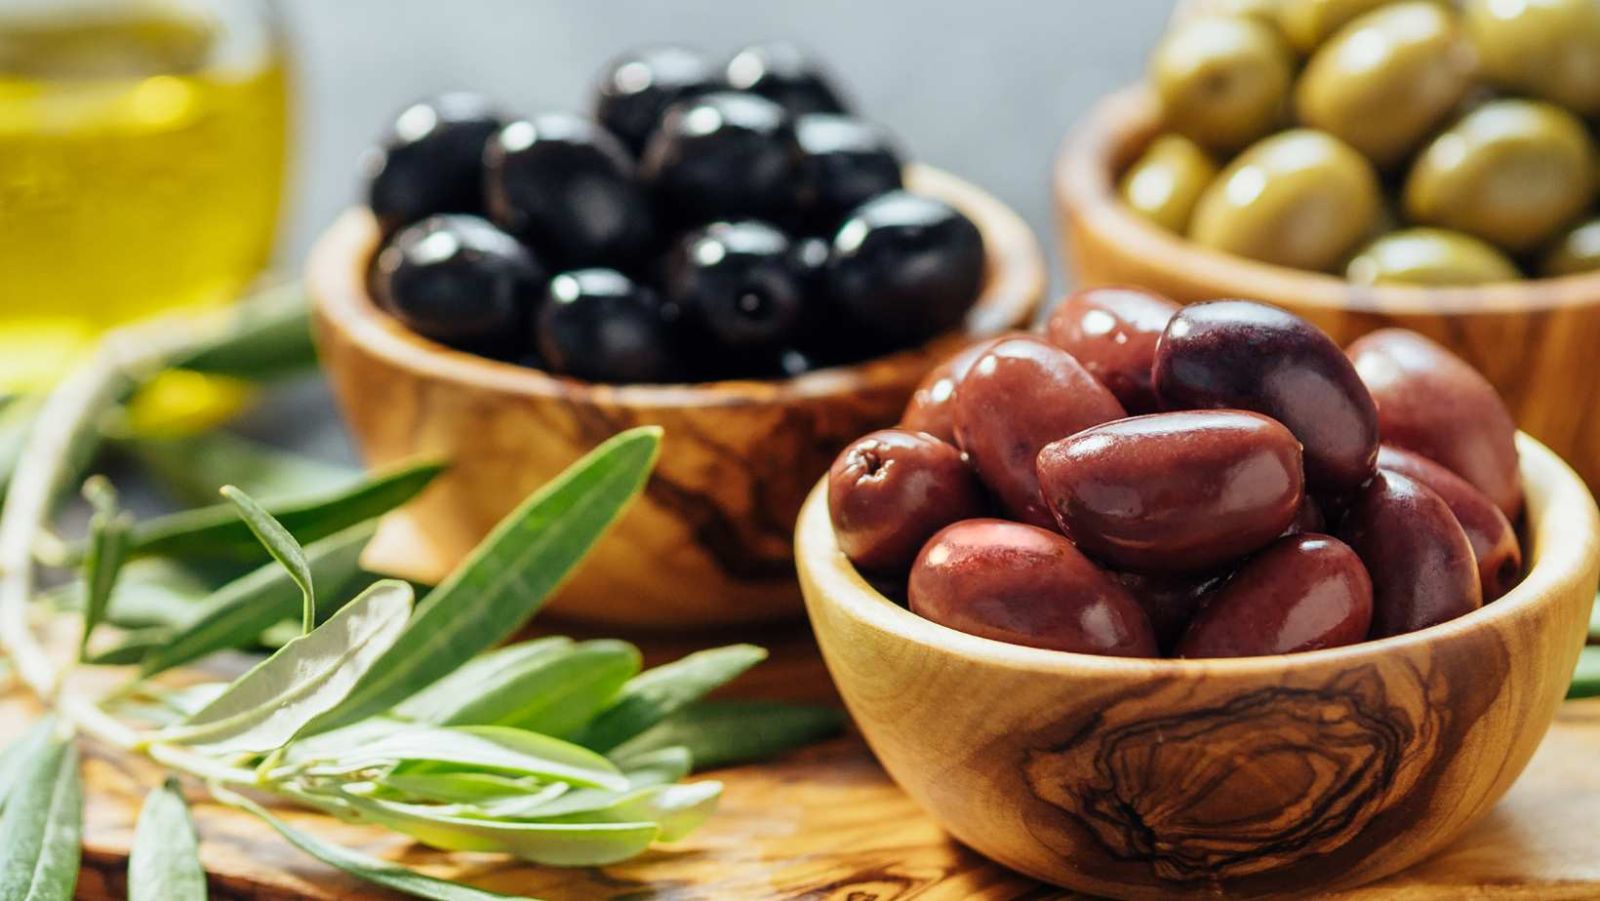 Manger trop d'olives : les experts tirent la sonnette d'alarme sur les risques pour la santé